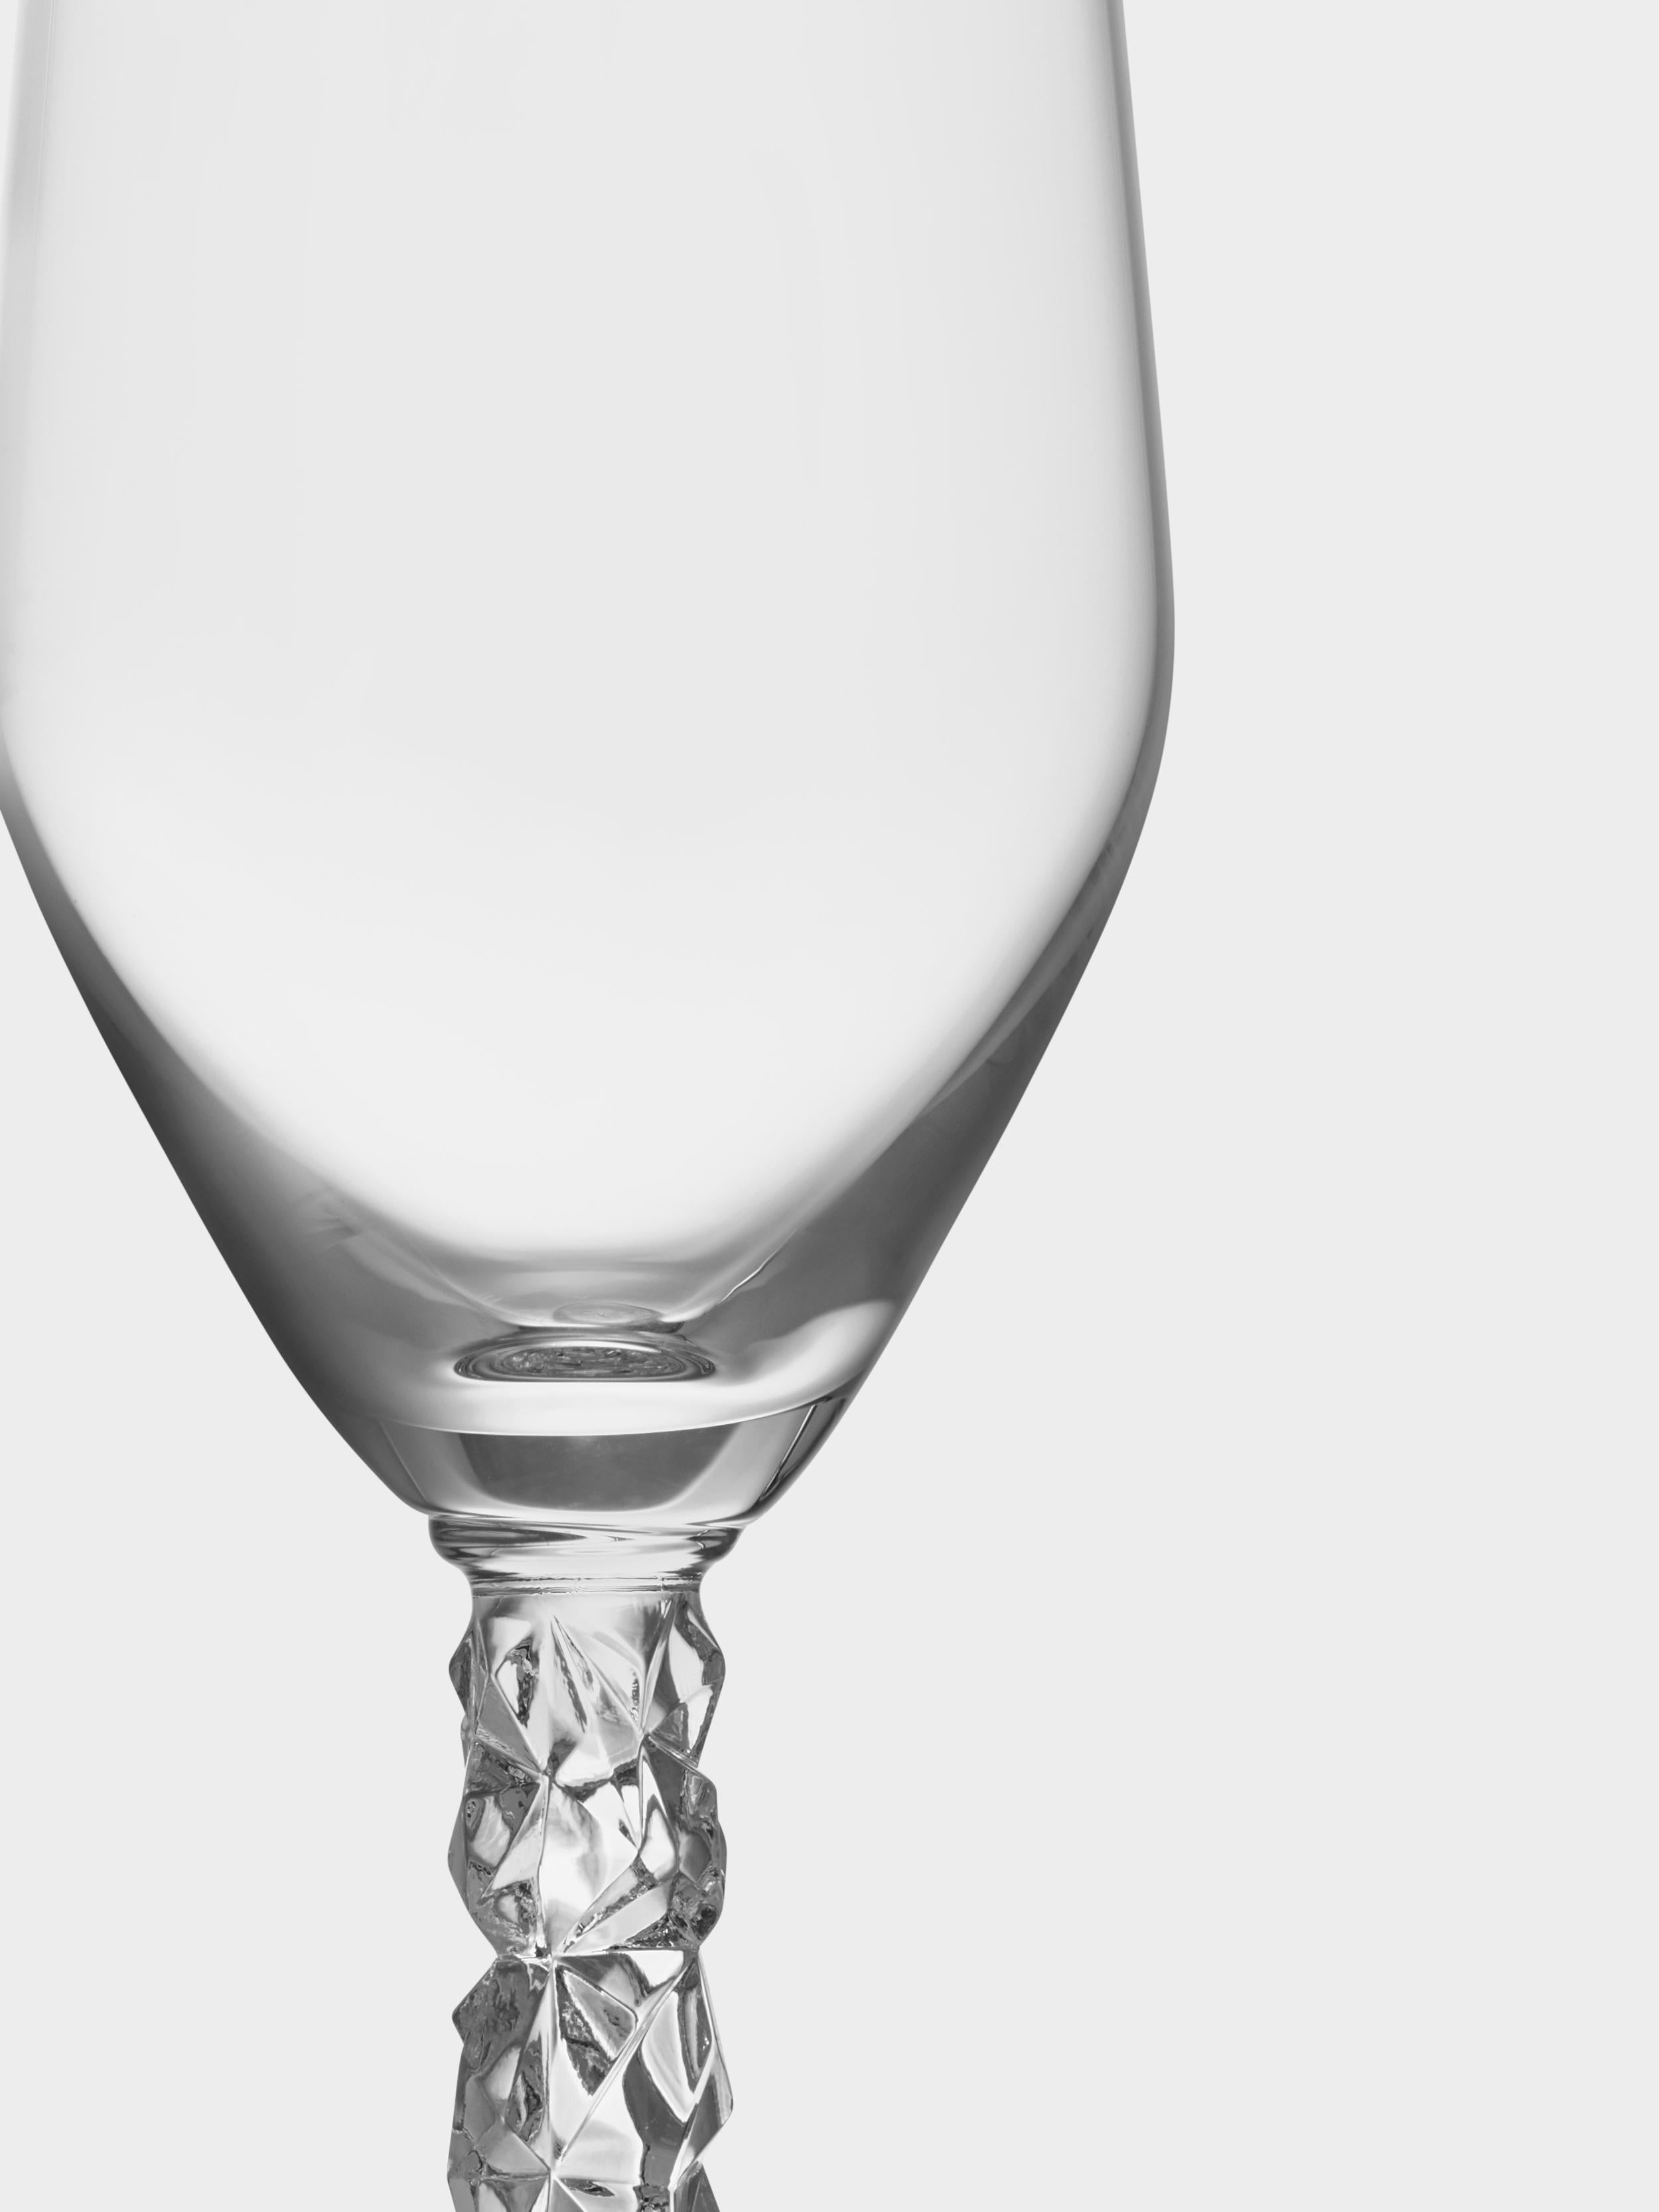 La collection Carat est basée sur une interprétation contemporaine du verre taillé traditionnel qui a fait la renommée mondiale d'Orrefors. Carat Champagne possède une tige recouverte du motif asymétrique caractéristique de la collection, qui